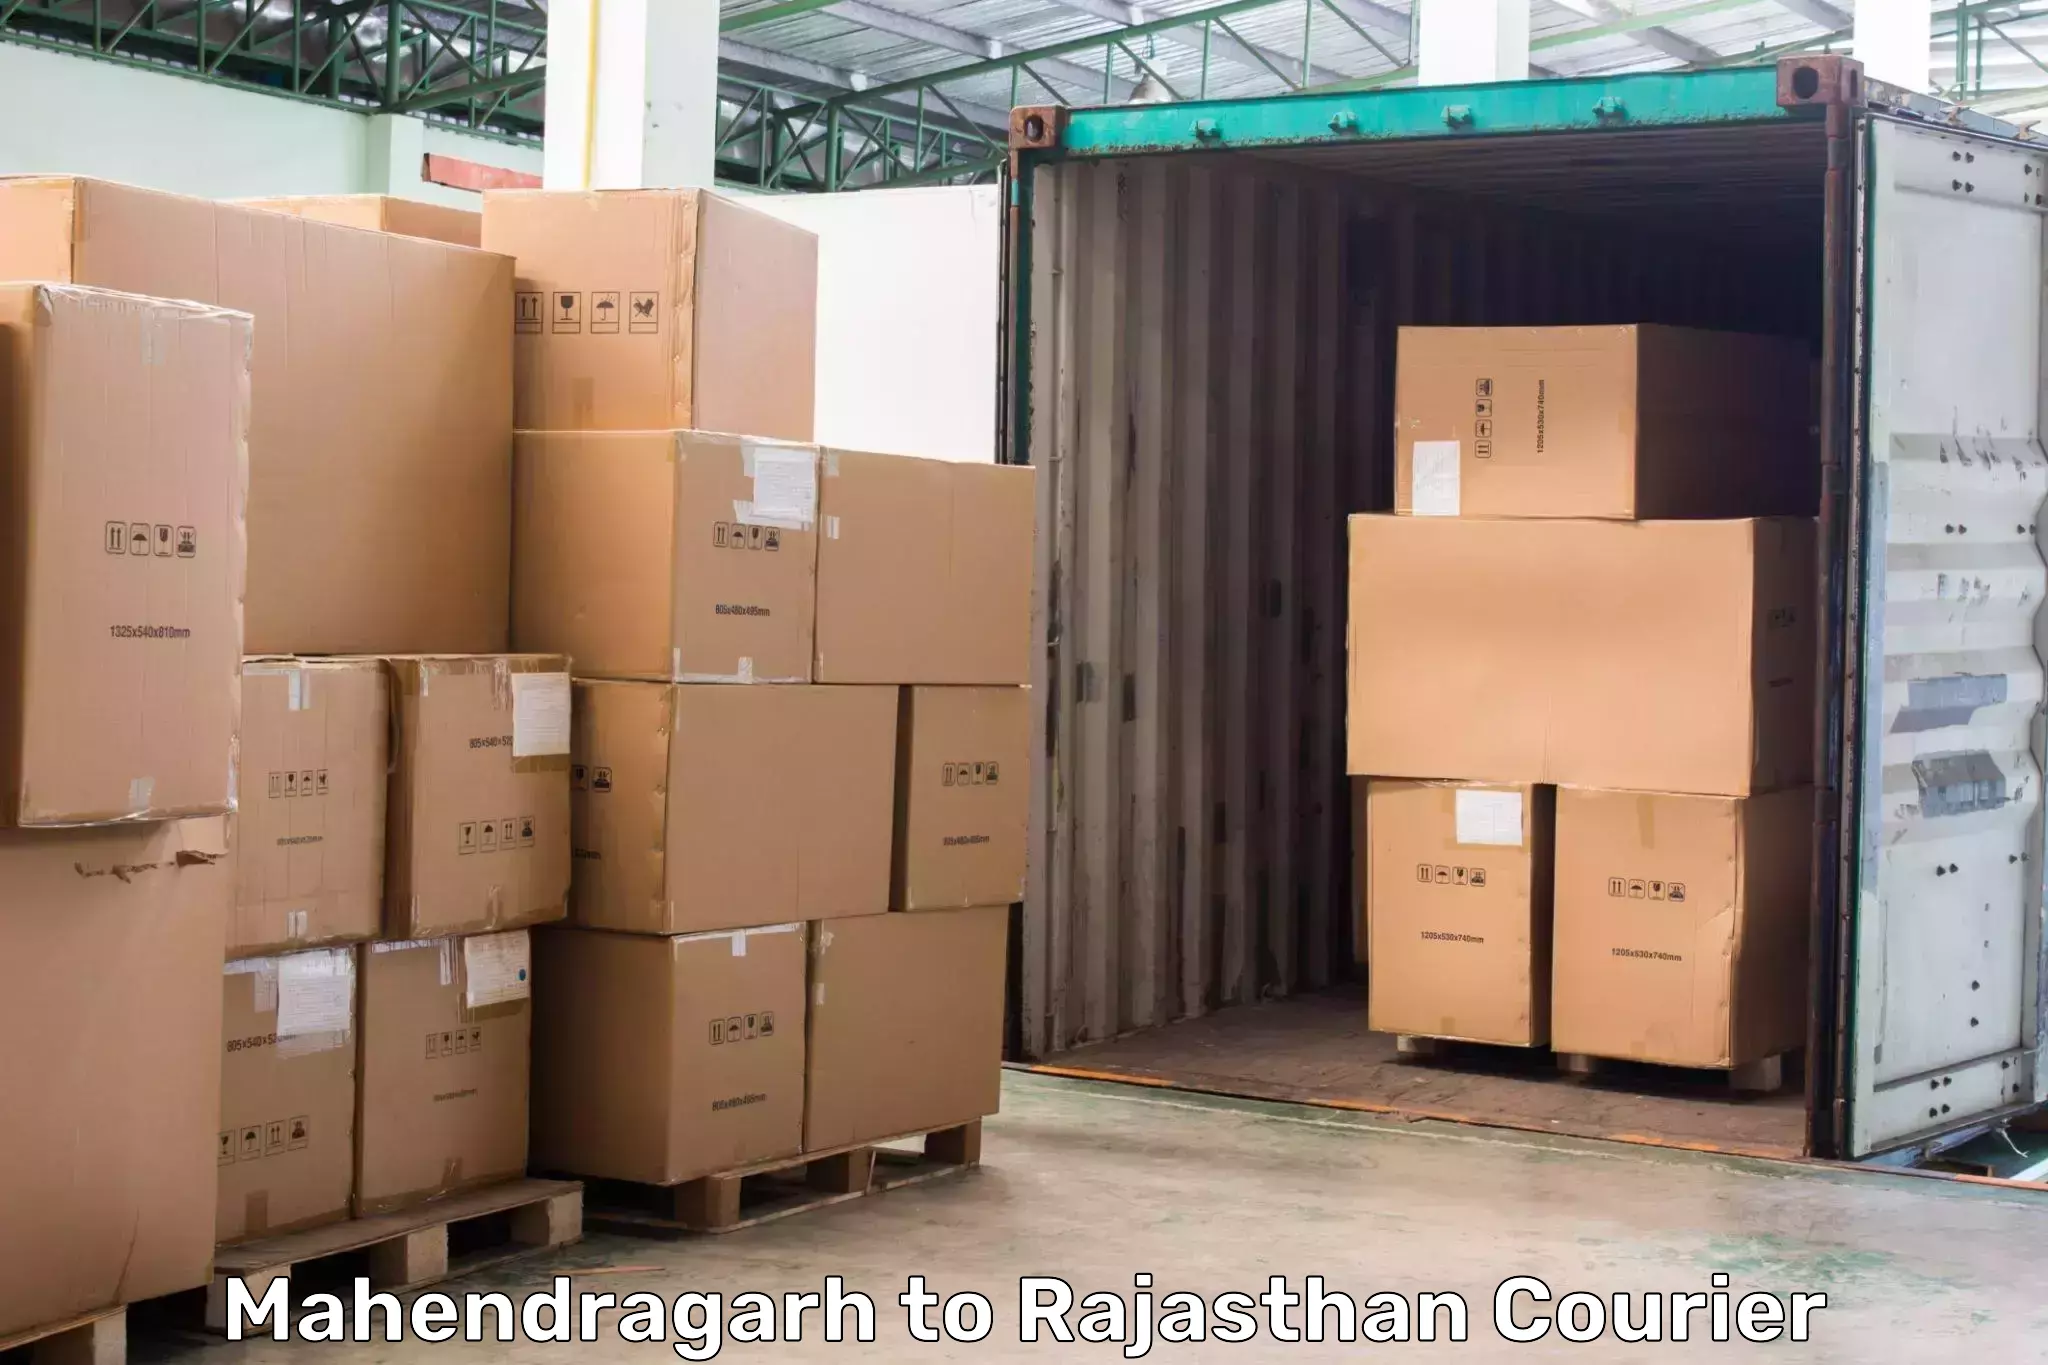 High-capacity parcel service Mahendragarh to Malpura